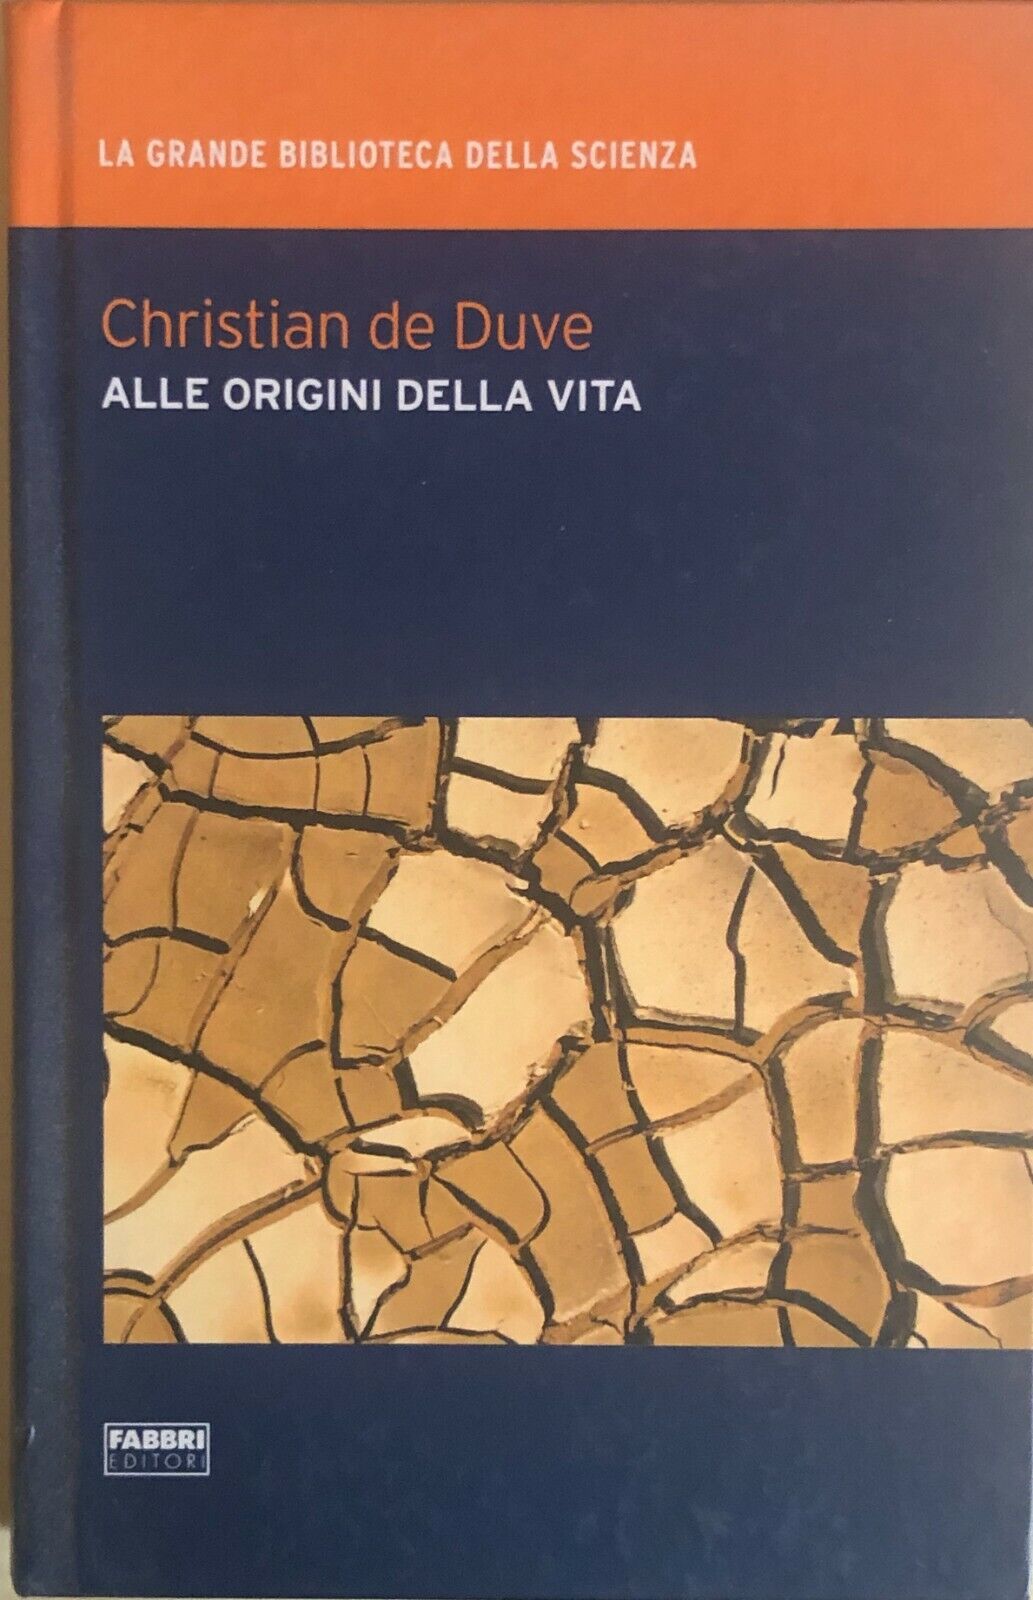 Alle origini della vita di Christian de Duve, 2009, Fabbri editori